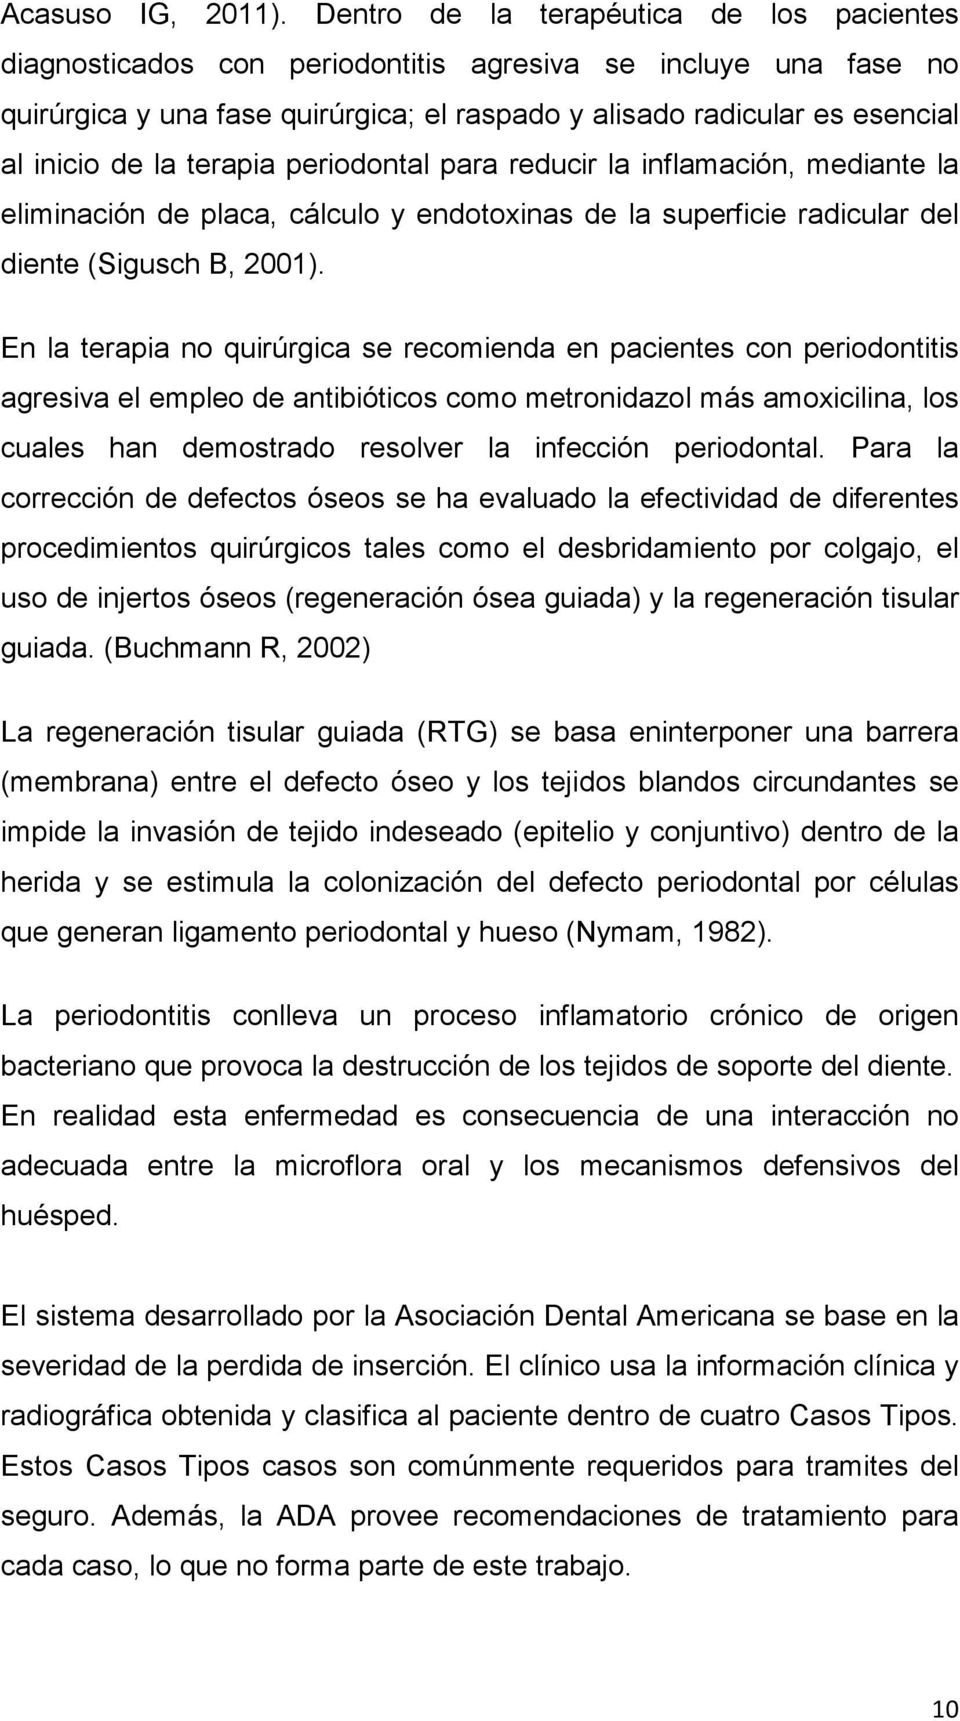 terapia periodontal para reducir la inflamación, mediante la eliminación de placa, cálculo y endotoxinas de la superficie radicular del diente (Sigusch B, 2001).